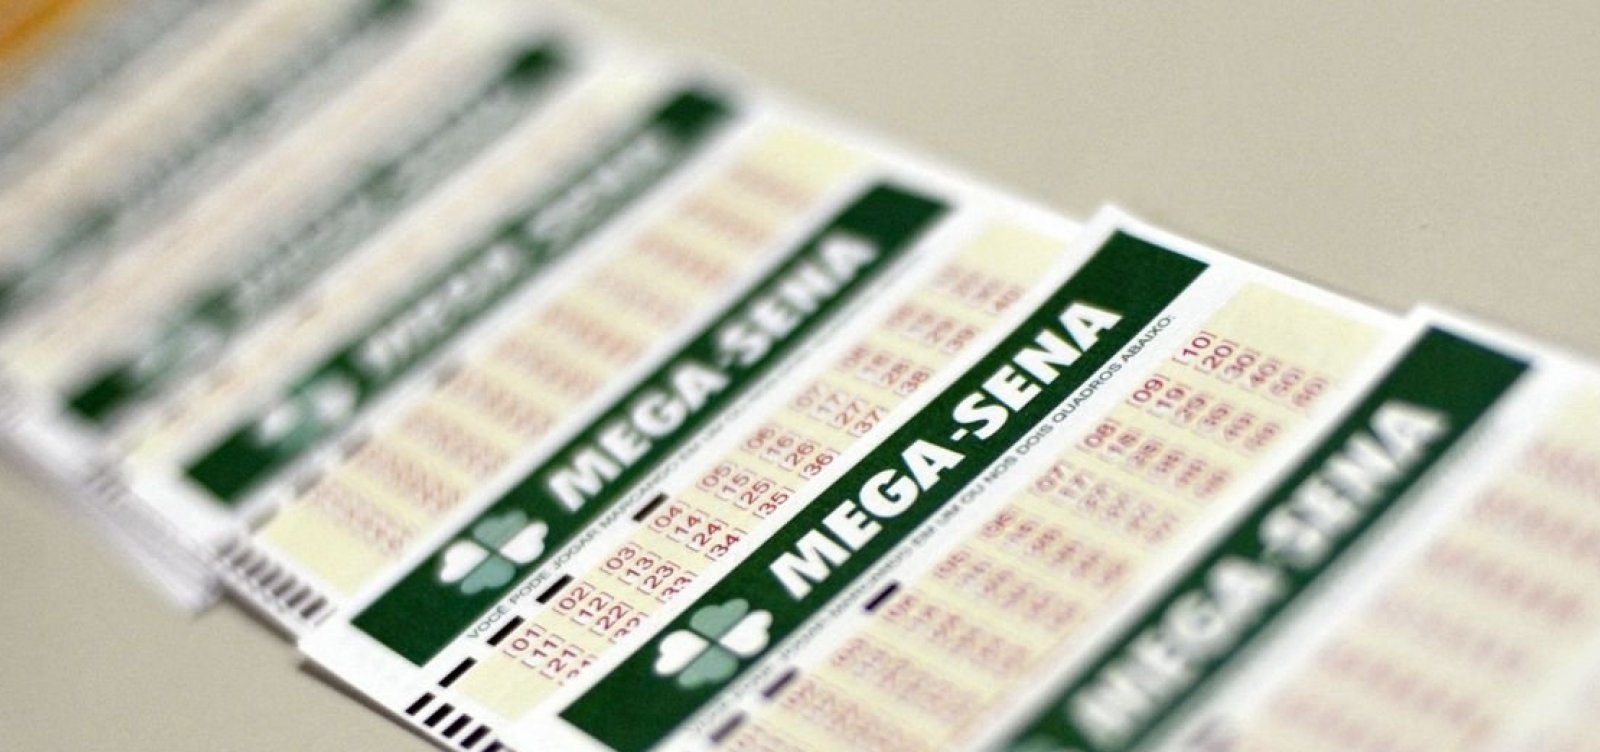 Mega-Sena pode pagar prêmio de R$ 19 milhões neste sábado